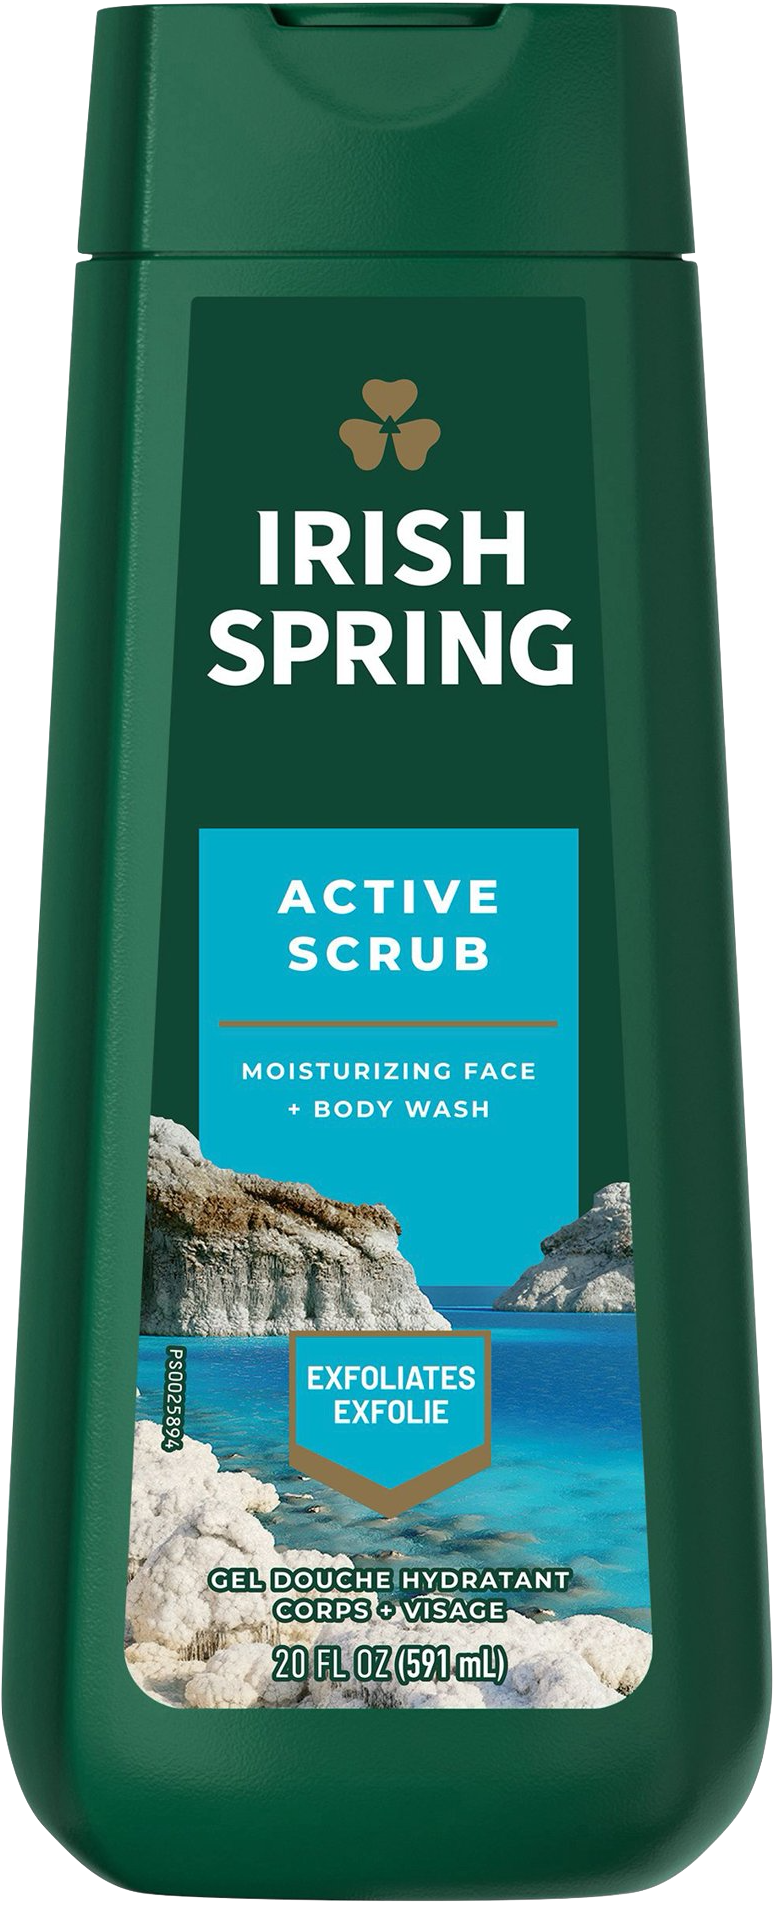 Irish Spring Active Scrub Moisturizing Face + Body Wash (591ml) - Quecan